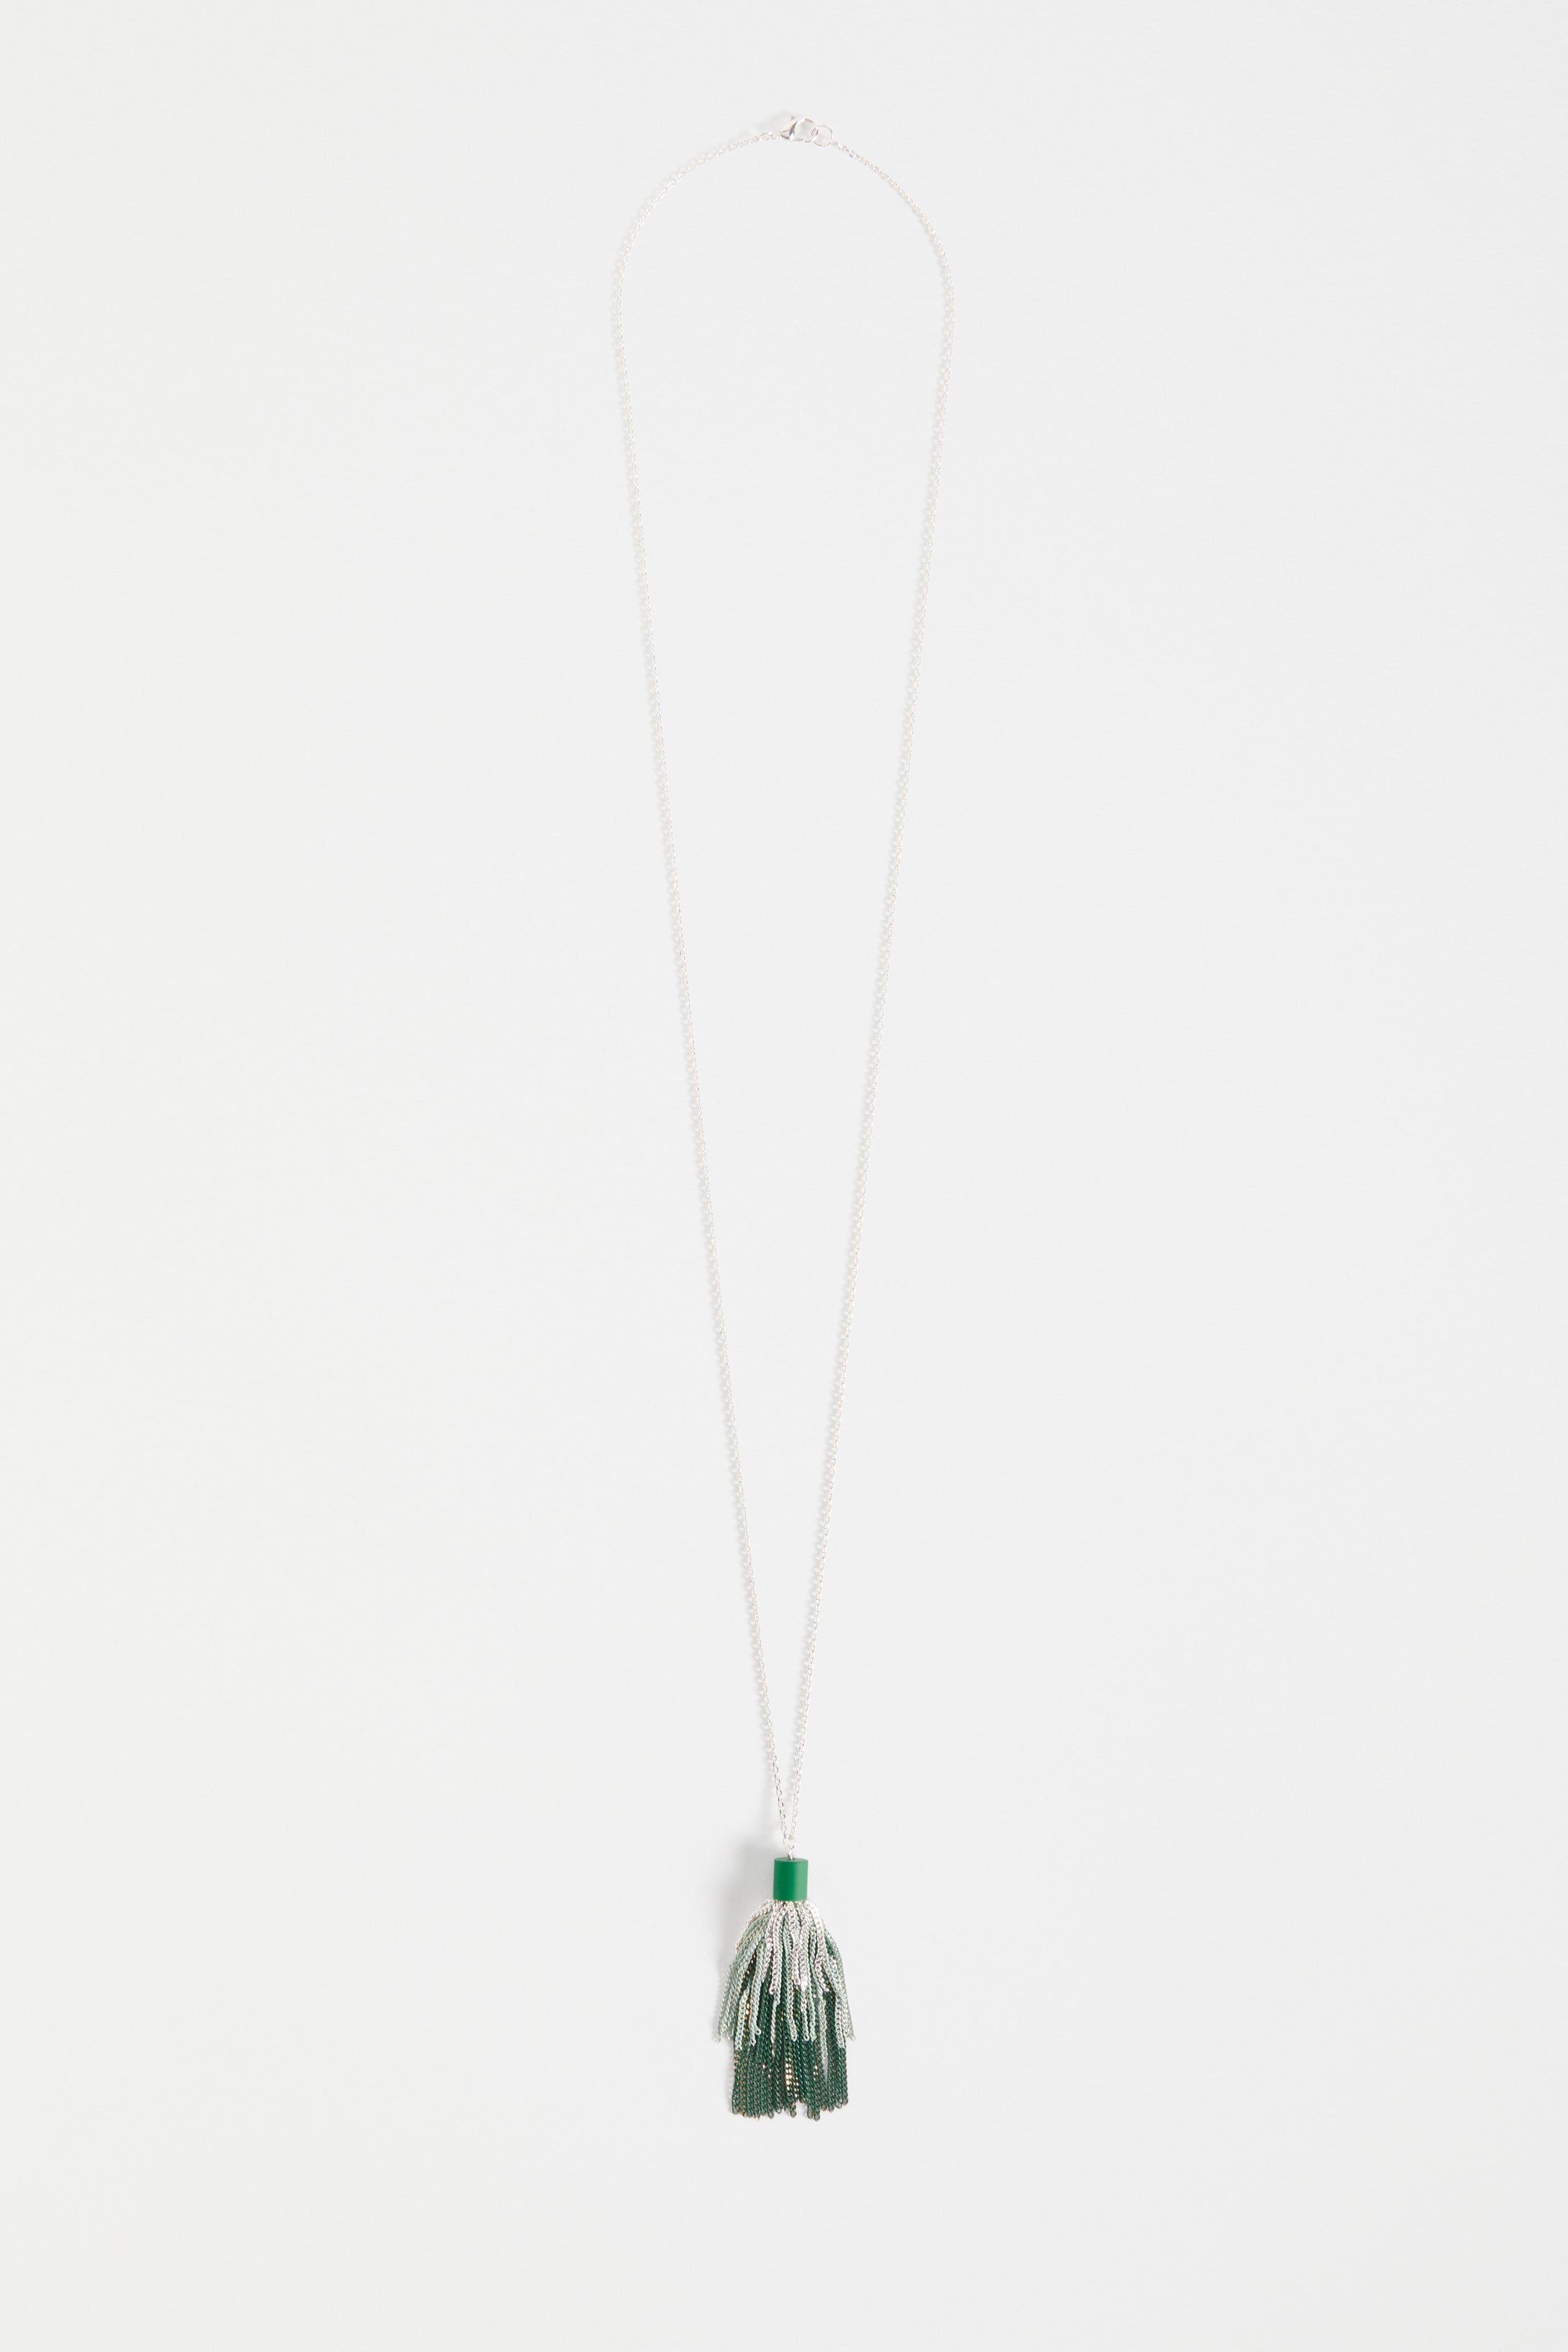 Frin Long Chain Fine Tassel Pendant Necklace | ALOE GREEN